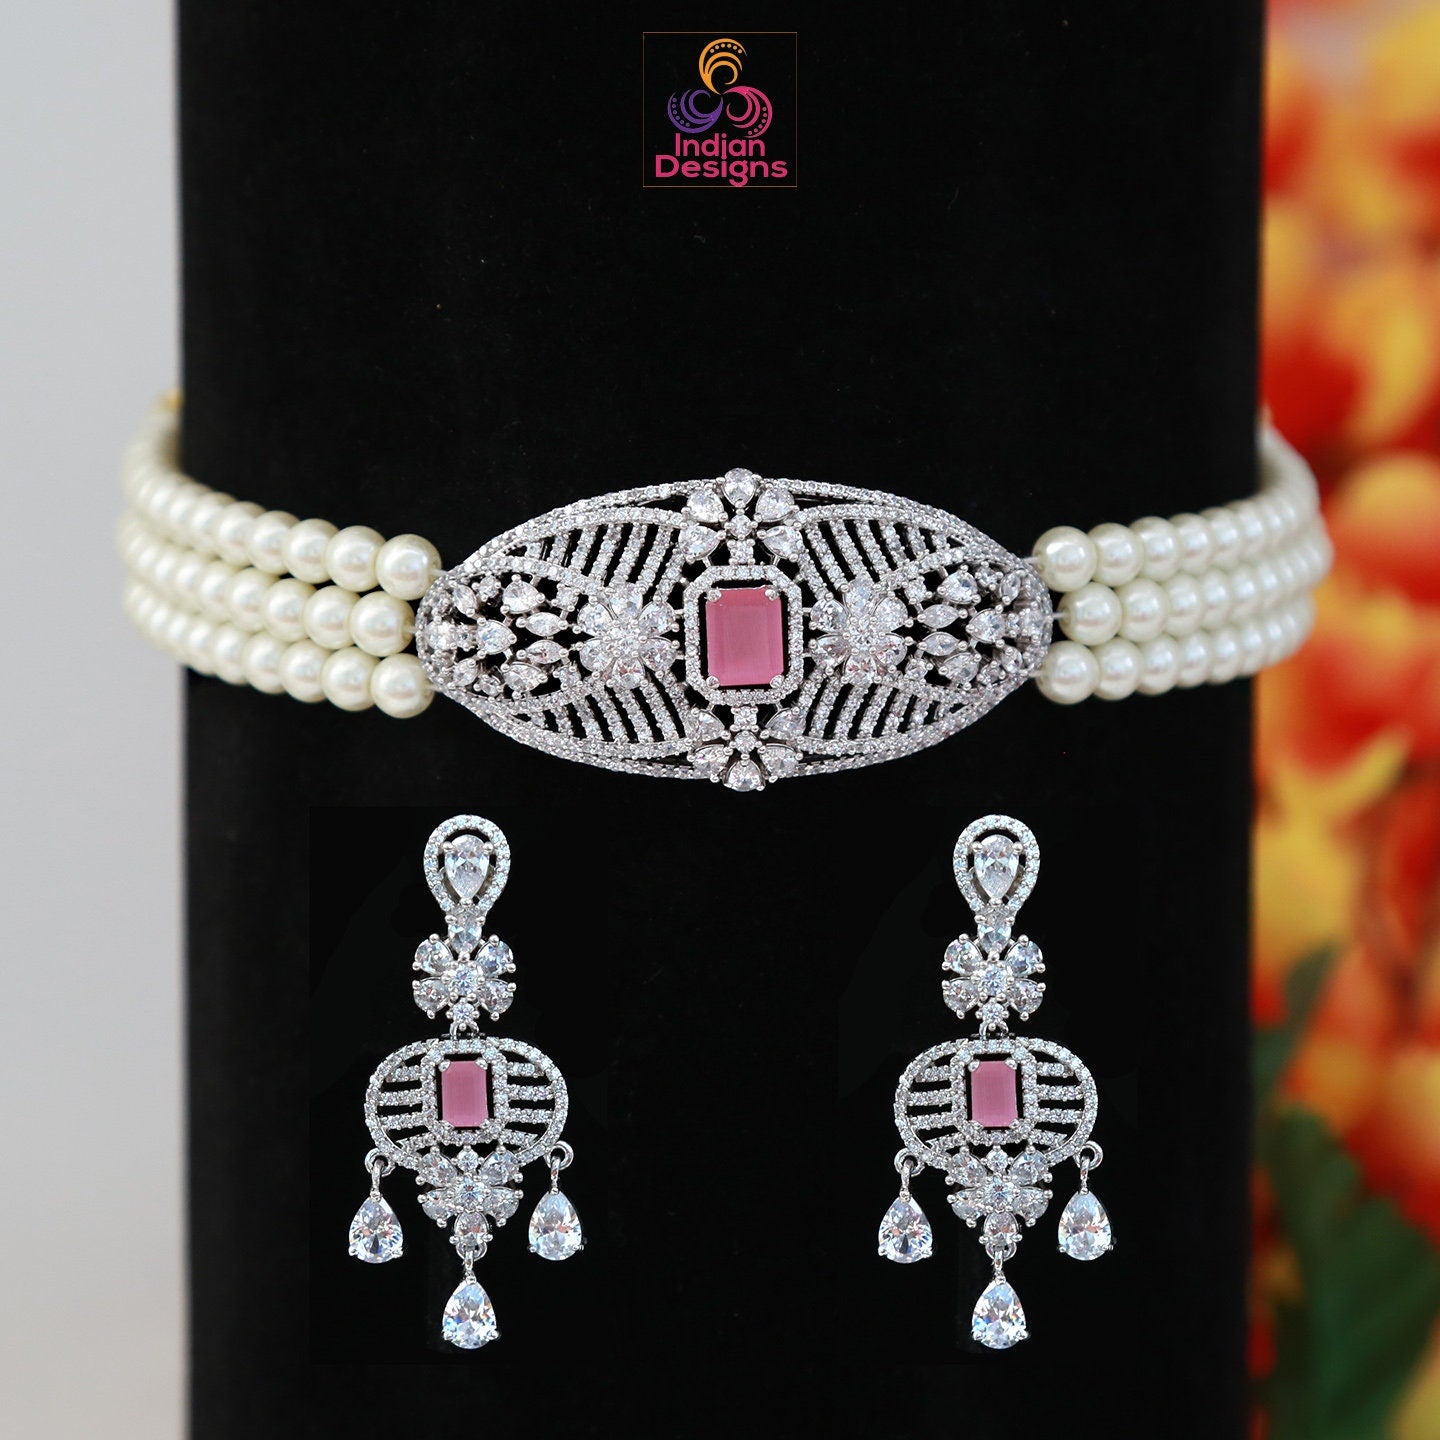 3 Strand pearl choker necklace | Pendant choker necklace | Ad pendant choker diamond necklace | Baby Pink choker set | Mint green choker set